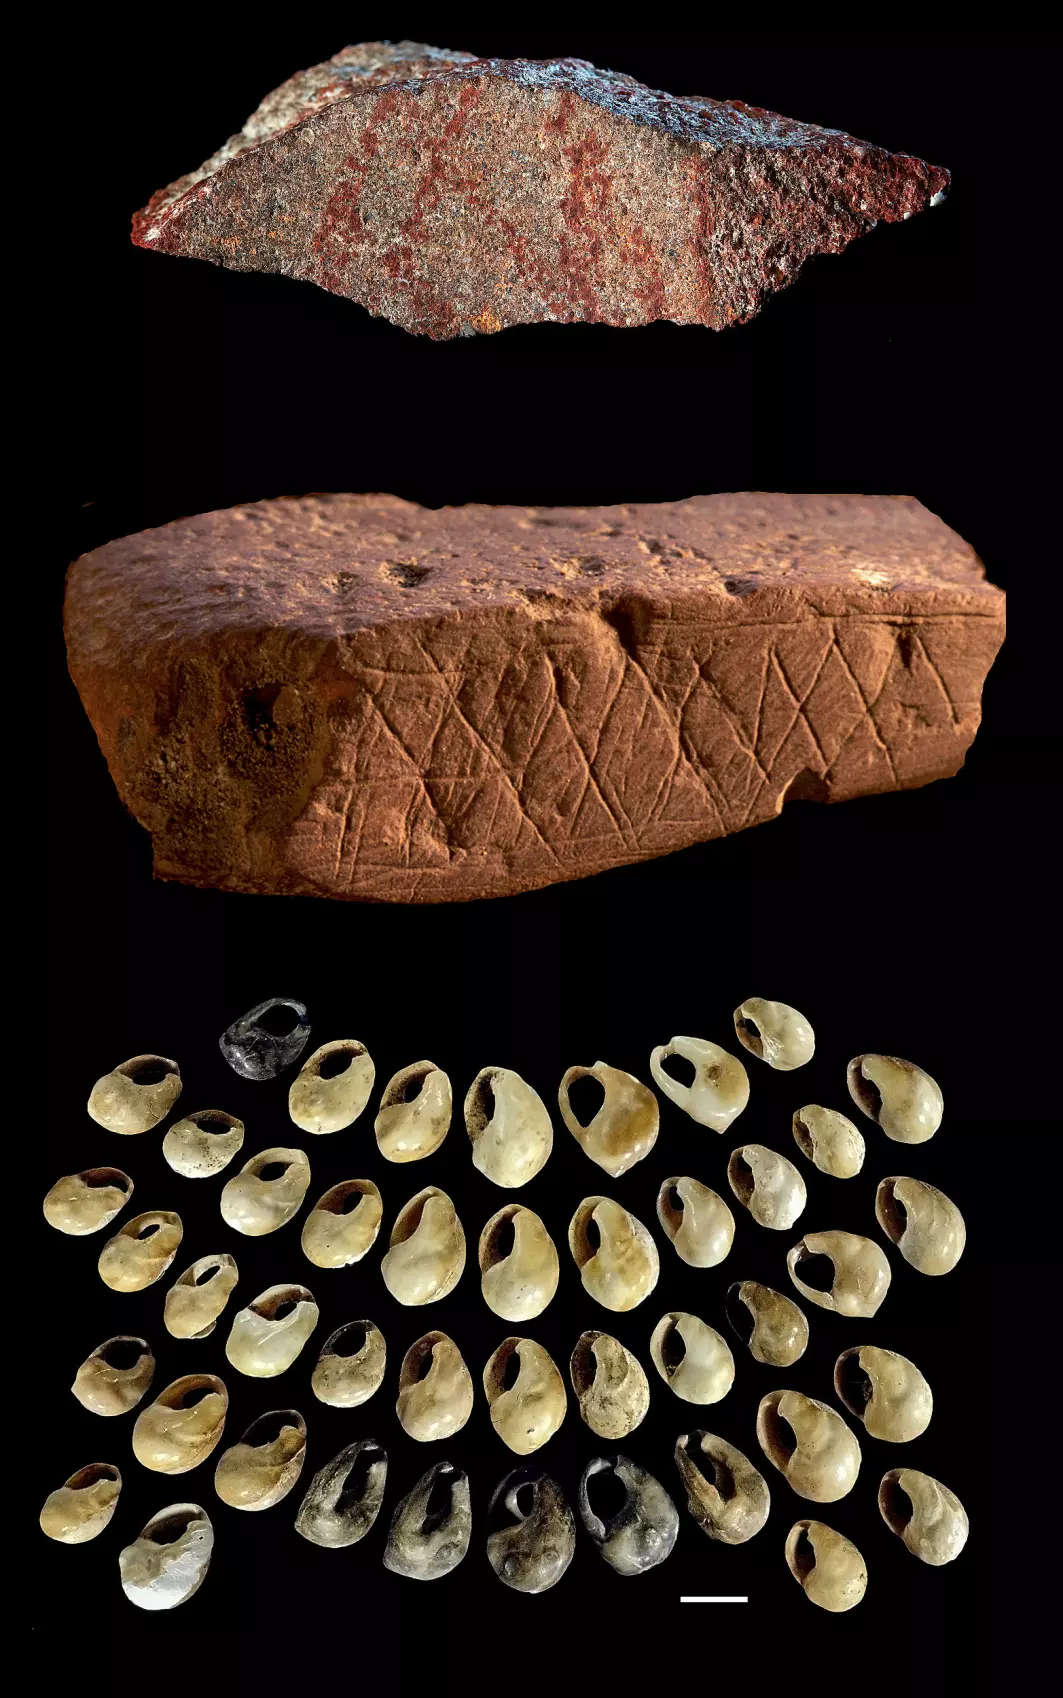 70 000 år gamle arteffakter funnet i Blomboshula. Øverst: tegning malt på steinavsalg. Midten: geometrisk mønster gravert inn på en okerbit. Nederst: smykkegjenstander laget av skjell.